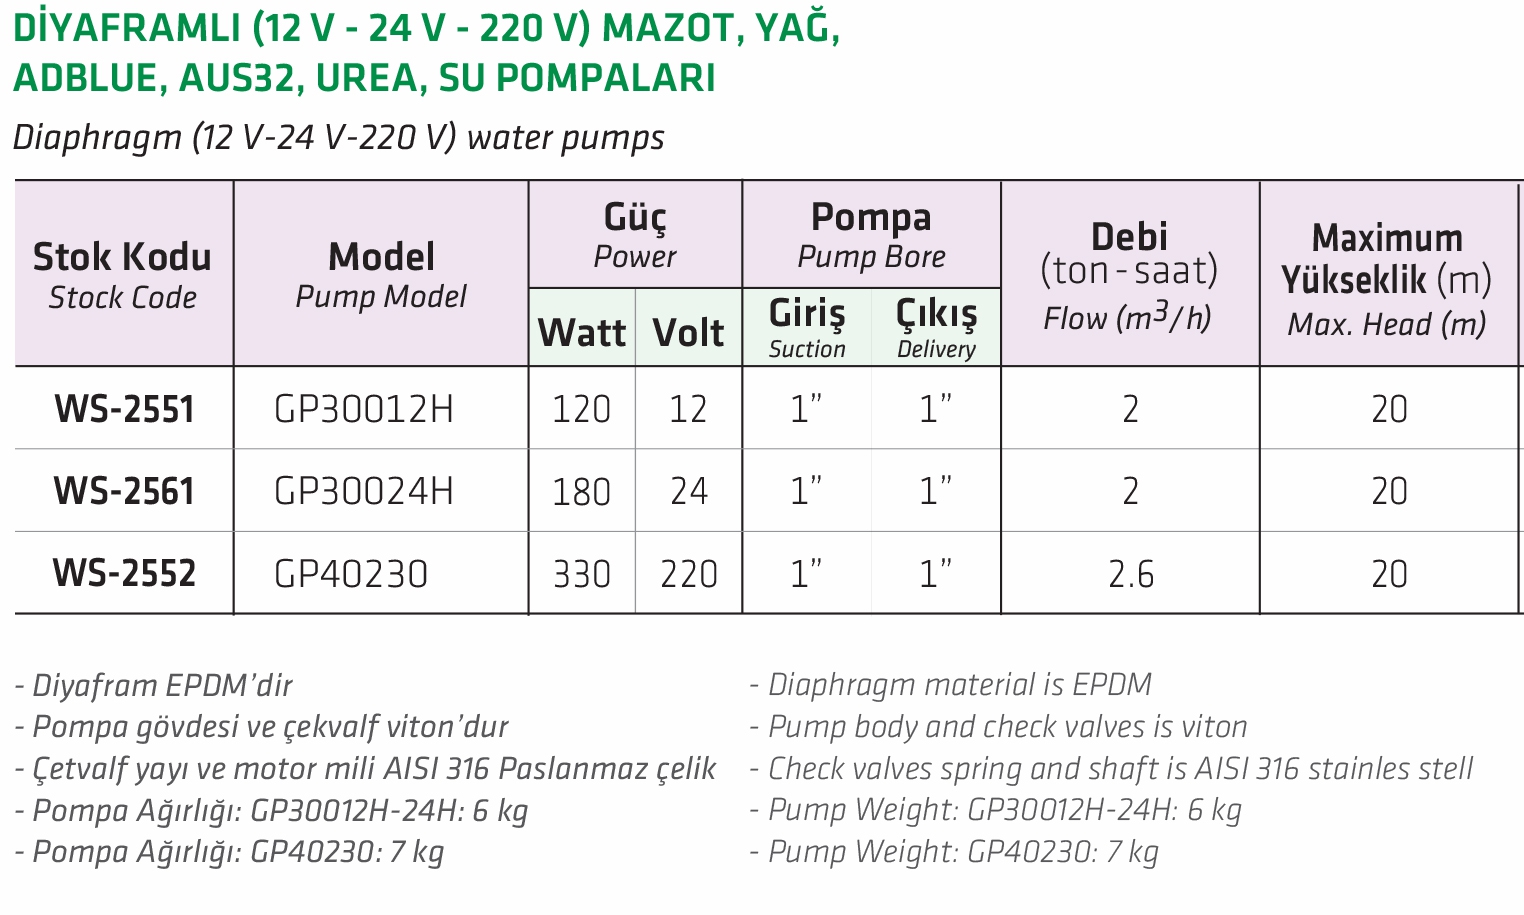 Water Sound GP30012H Diyaframlı 12V  Mazot, Yağ, Adblue, Aus32, Urea, Su Pompası